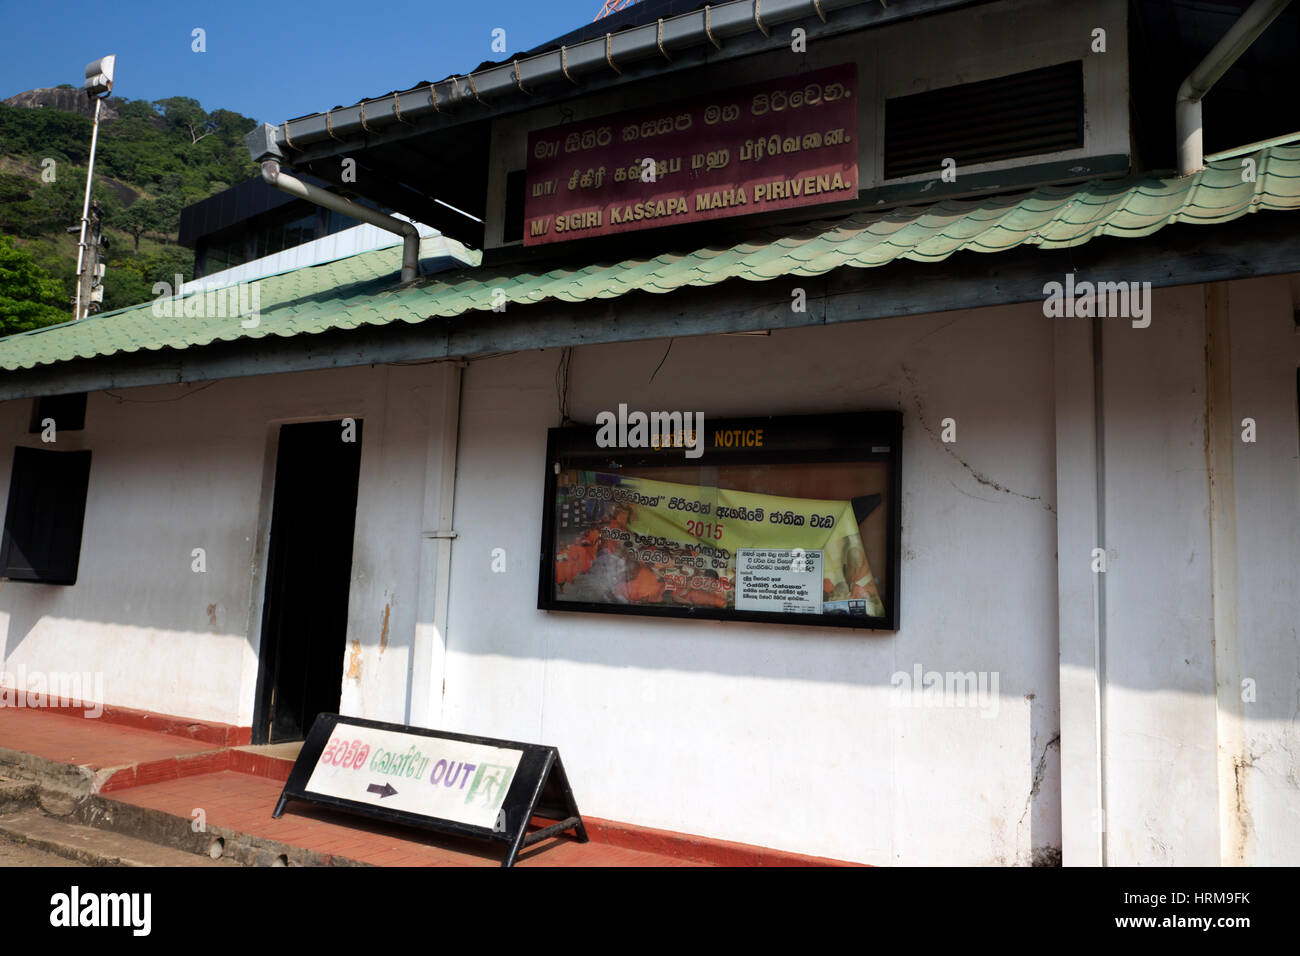 Dambulla Sri Lanka Tempio Dorato Sigiri Maha Kassapa Pirivena un istituto di istruzione per il clero e i laici insegnamento del Buddismo e lingue Foto Stock